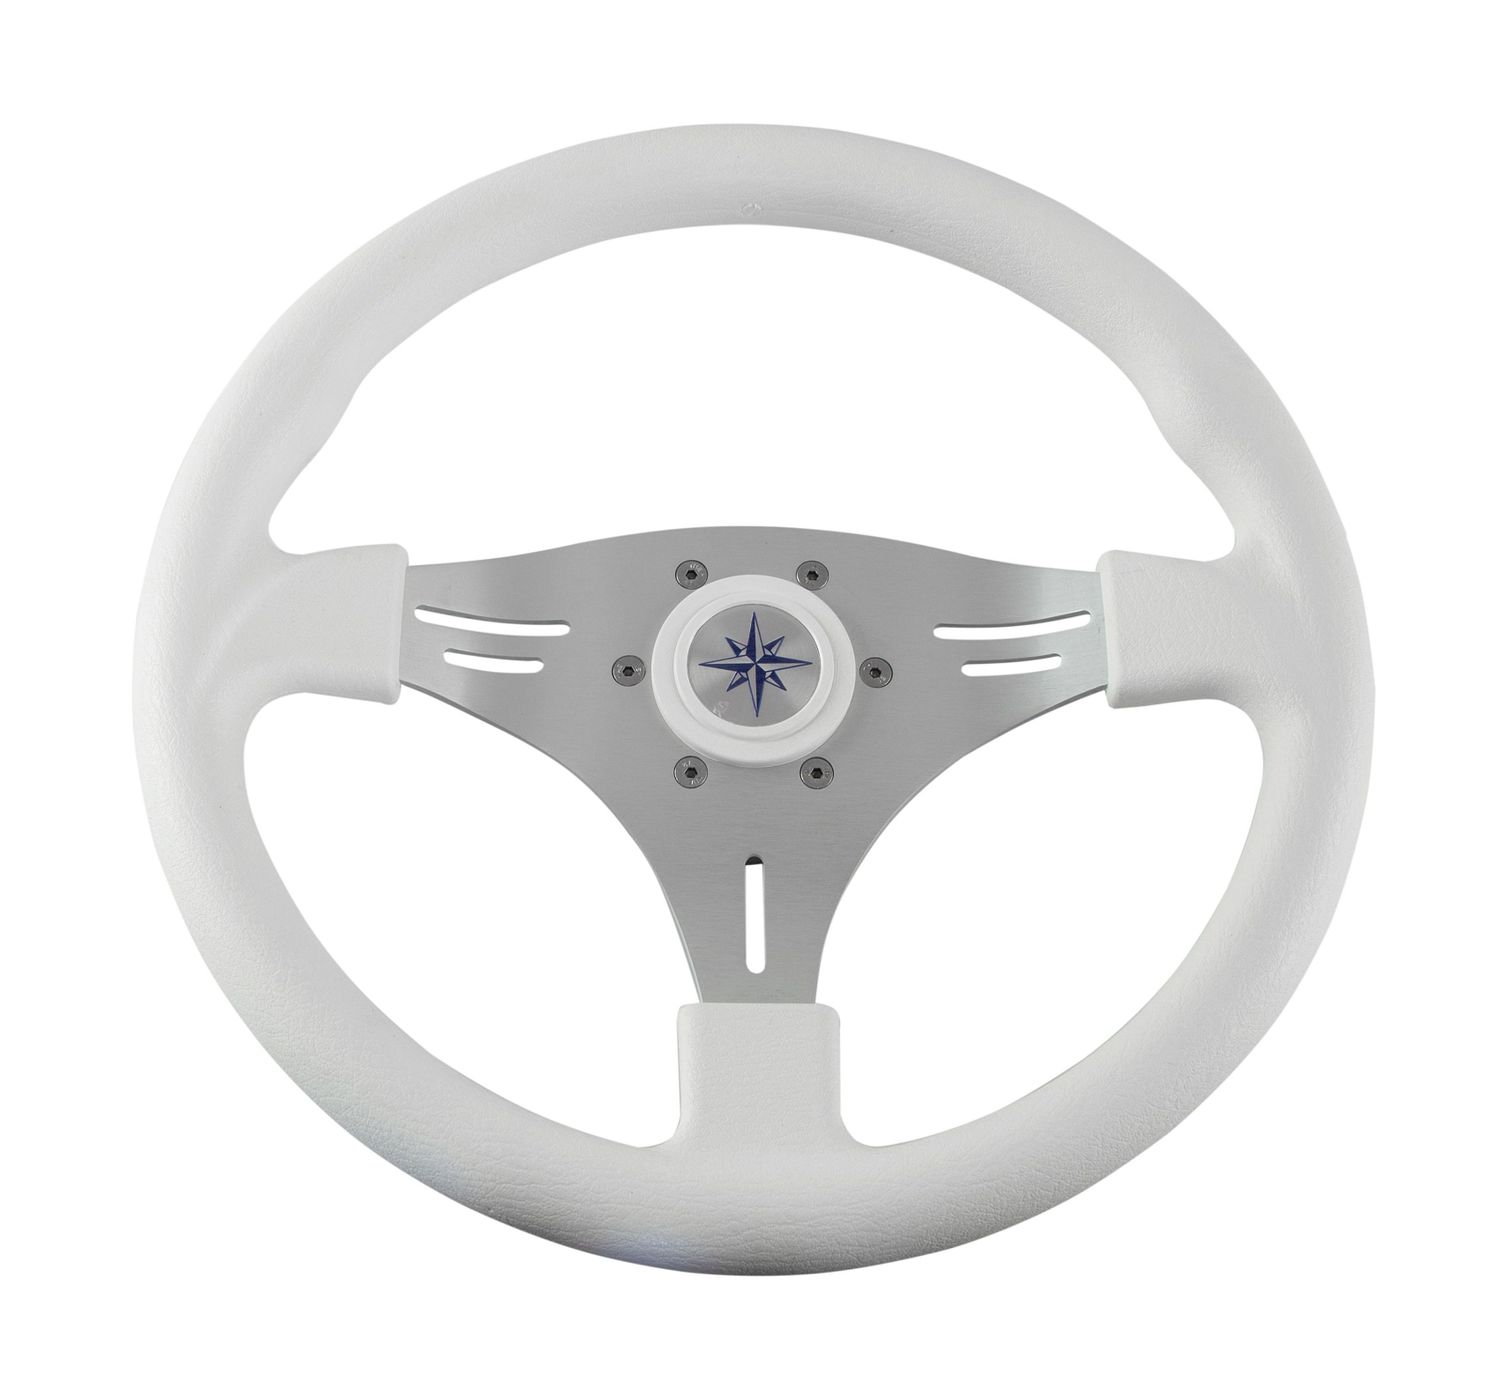 Рулевое колесо MANTA обод белый, спицы серебряные д. 355 мм VN70551-08 рулевое колесо delfino обод спицы серебряные д 340 мм vn70401 01